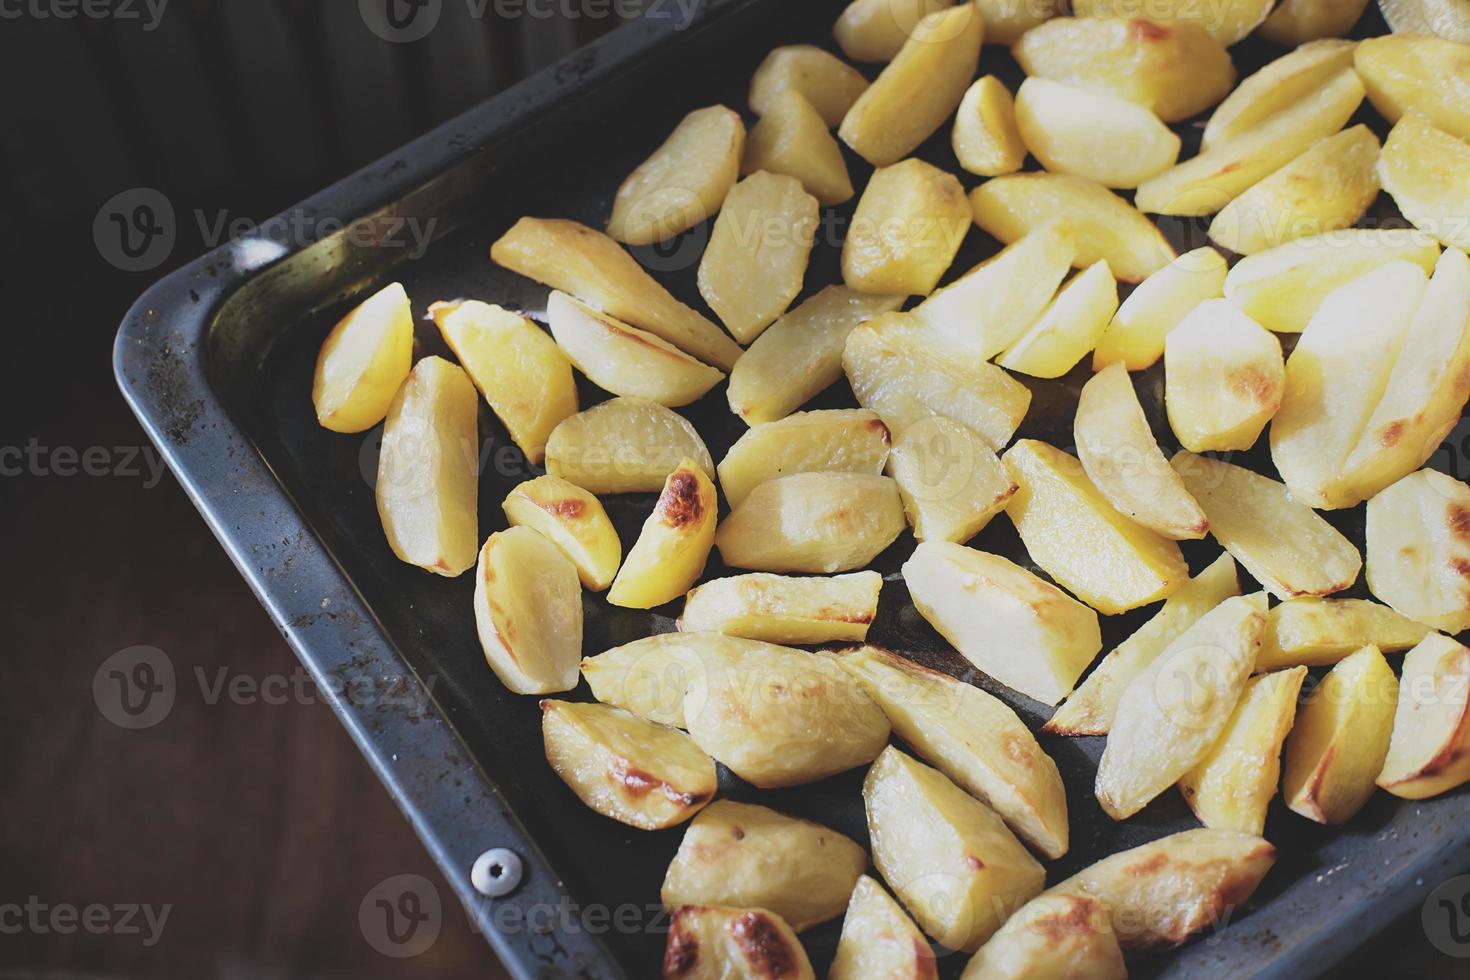 pommes de terre croustillantes au four. de délicieuses pommes de terre pour un dîner maison tout juste sorti du four. dîner week-end en famille photo